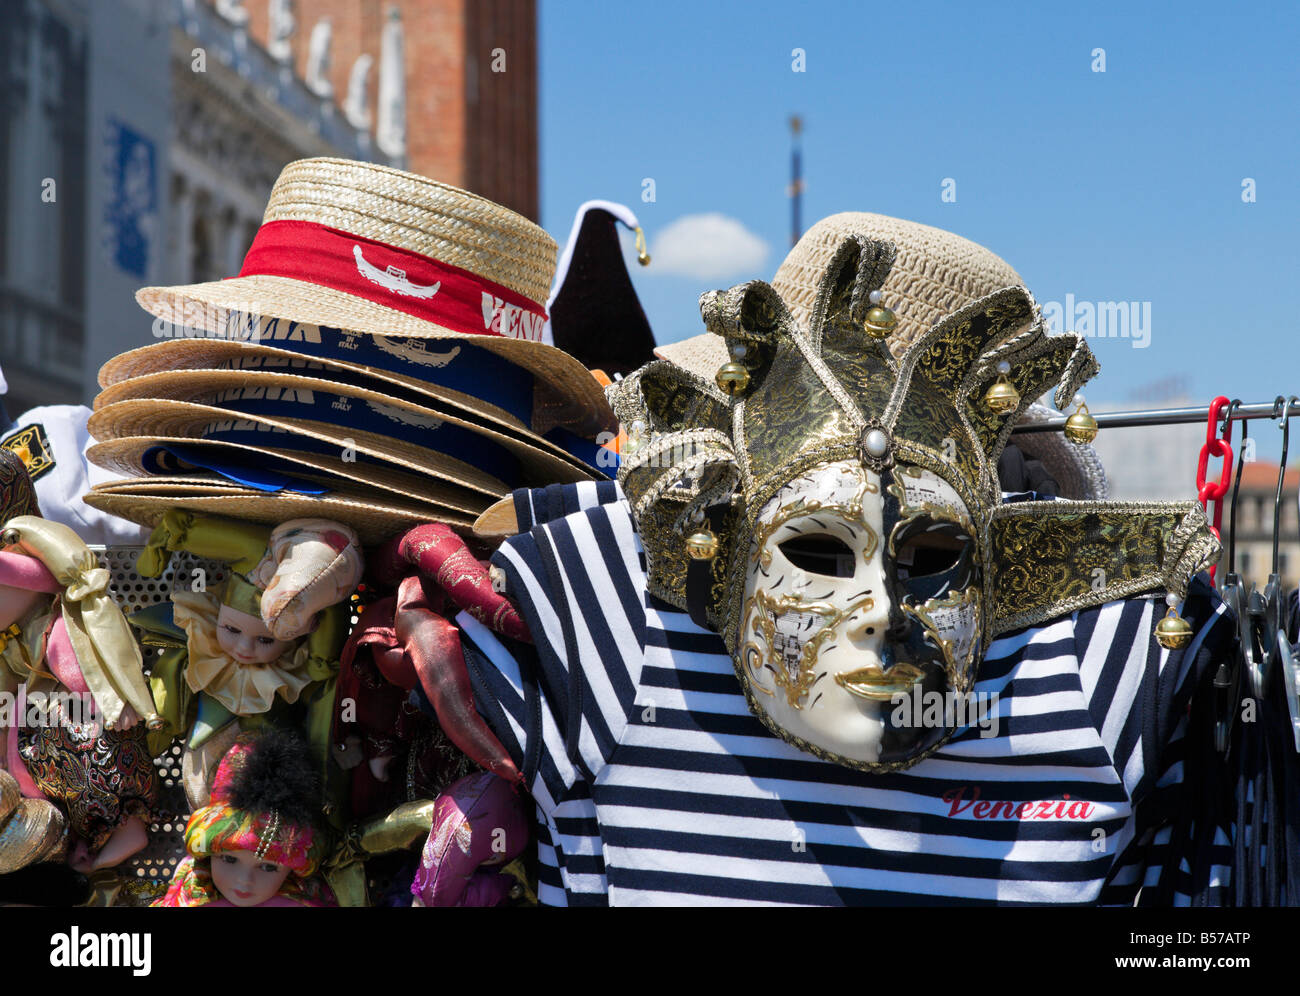 Échoppe de marché vendre Venezia les chapeaux de paille, de chemises et de carnaval, Piazzeta, San Marco, Venise, Vénétie, Italie Banque D'Images